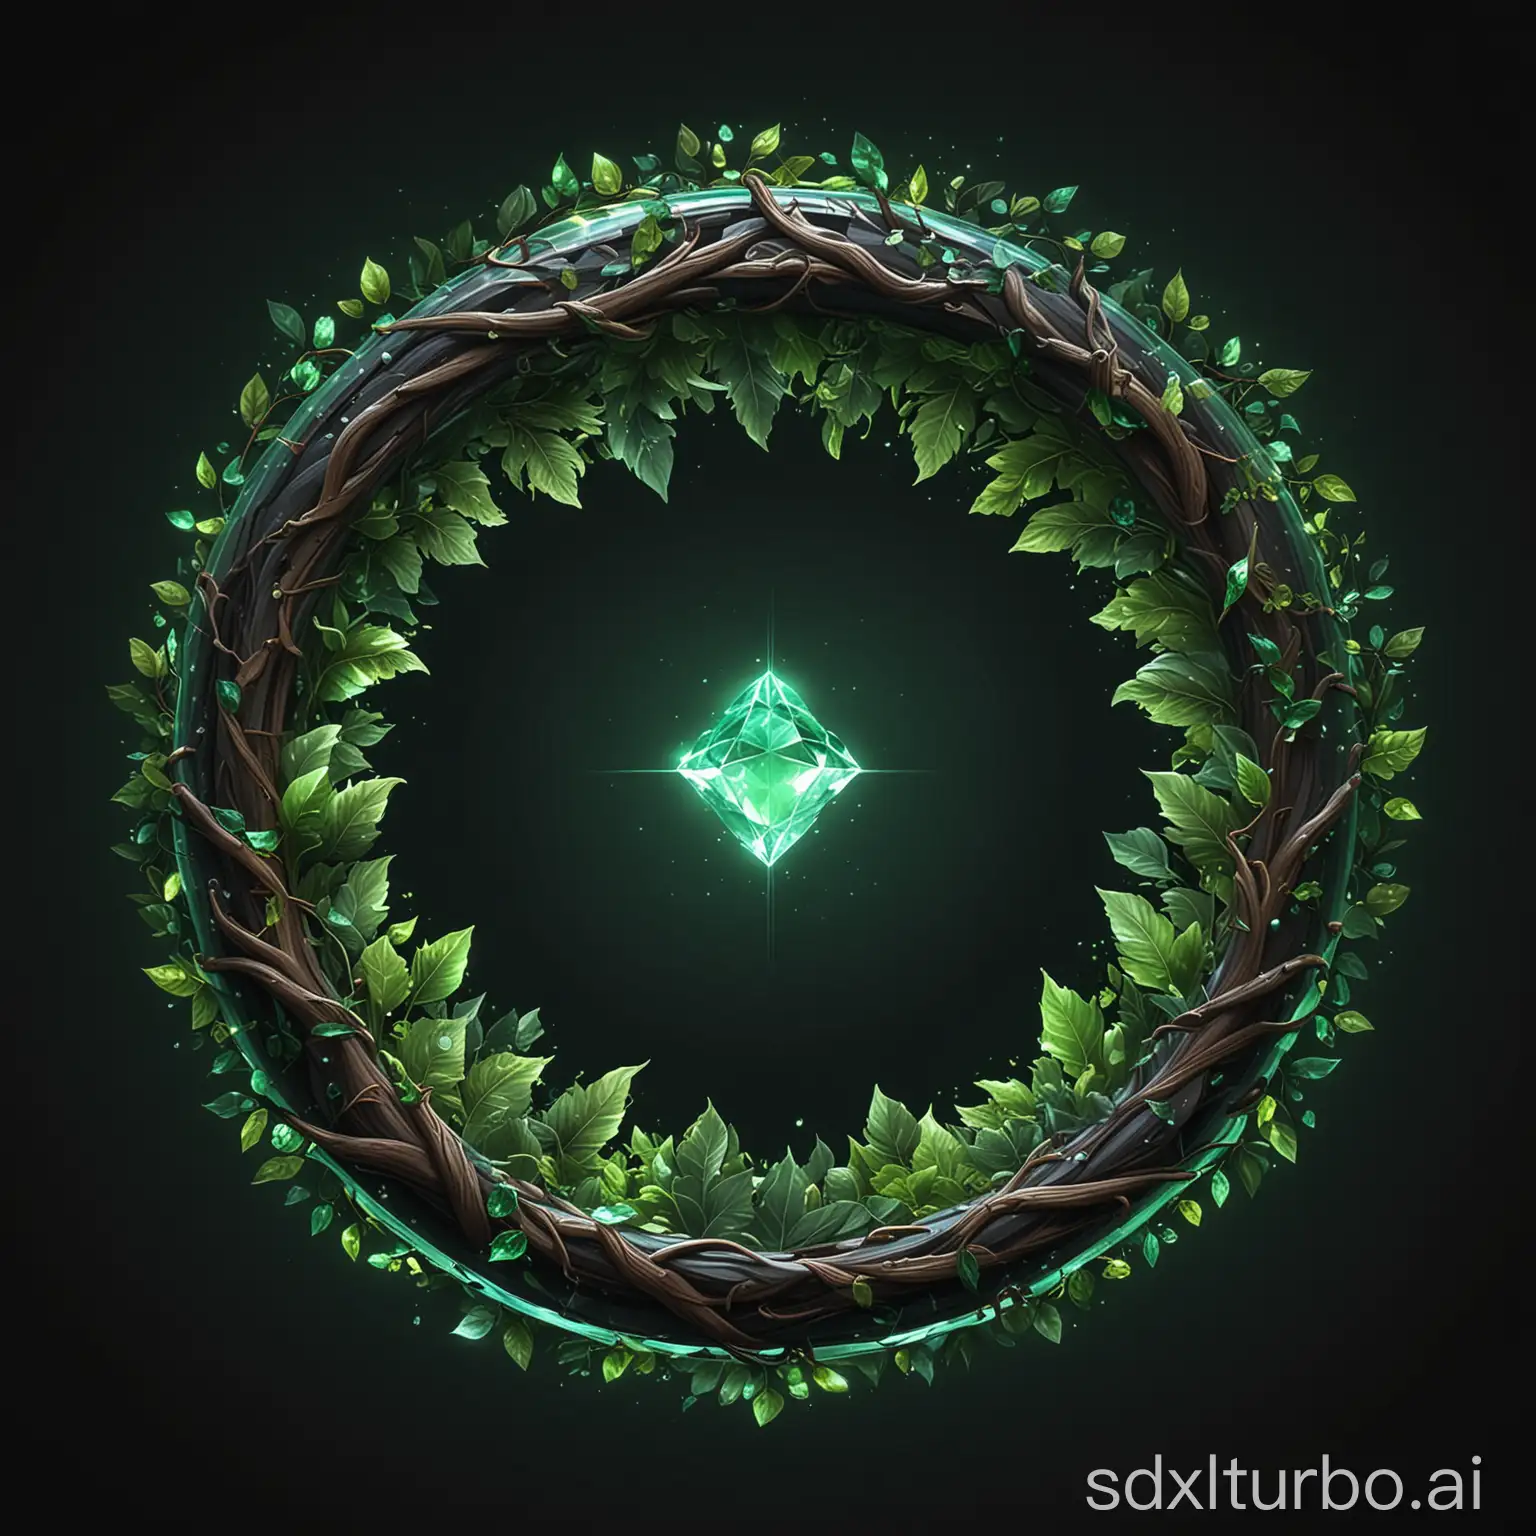 Fantasy-Game-Logo-Illuminated-Crystal-Ring-with-Lush-Foliage